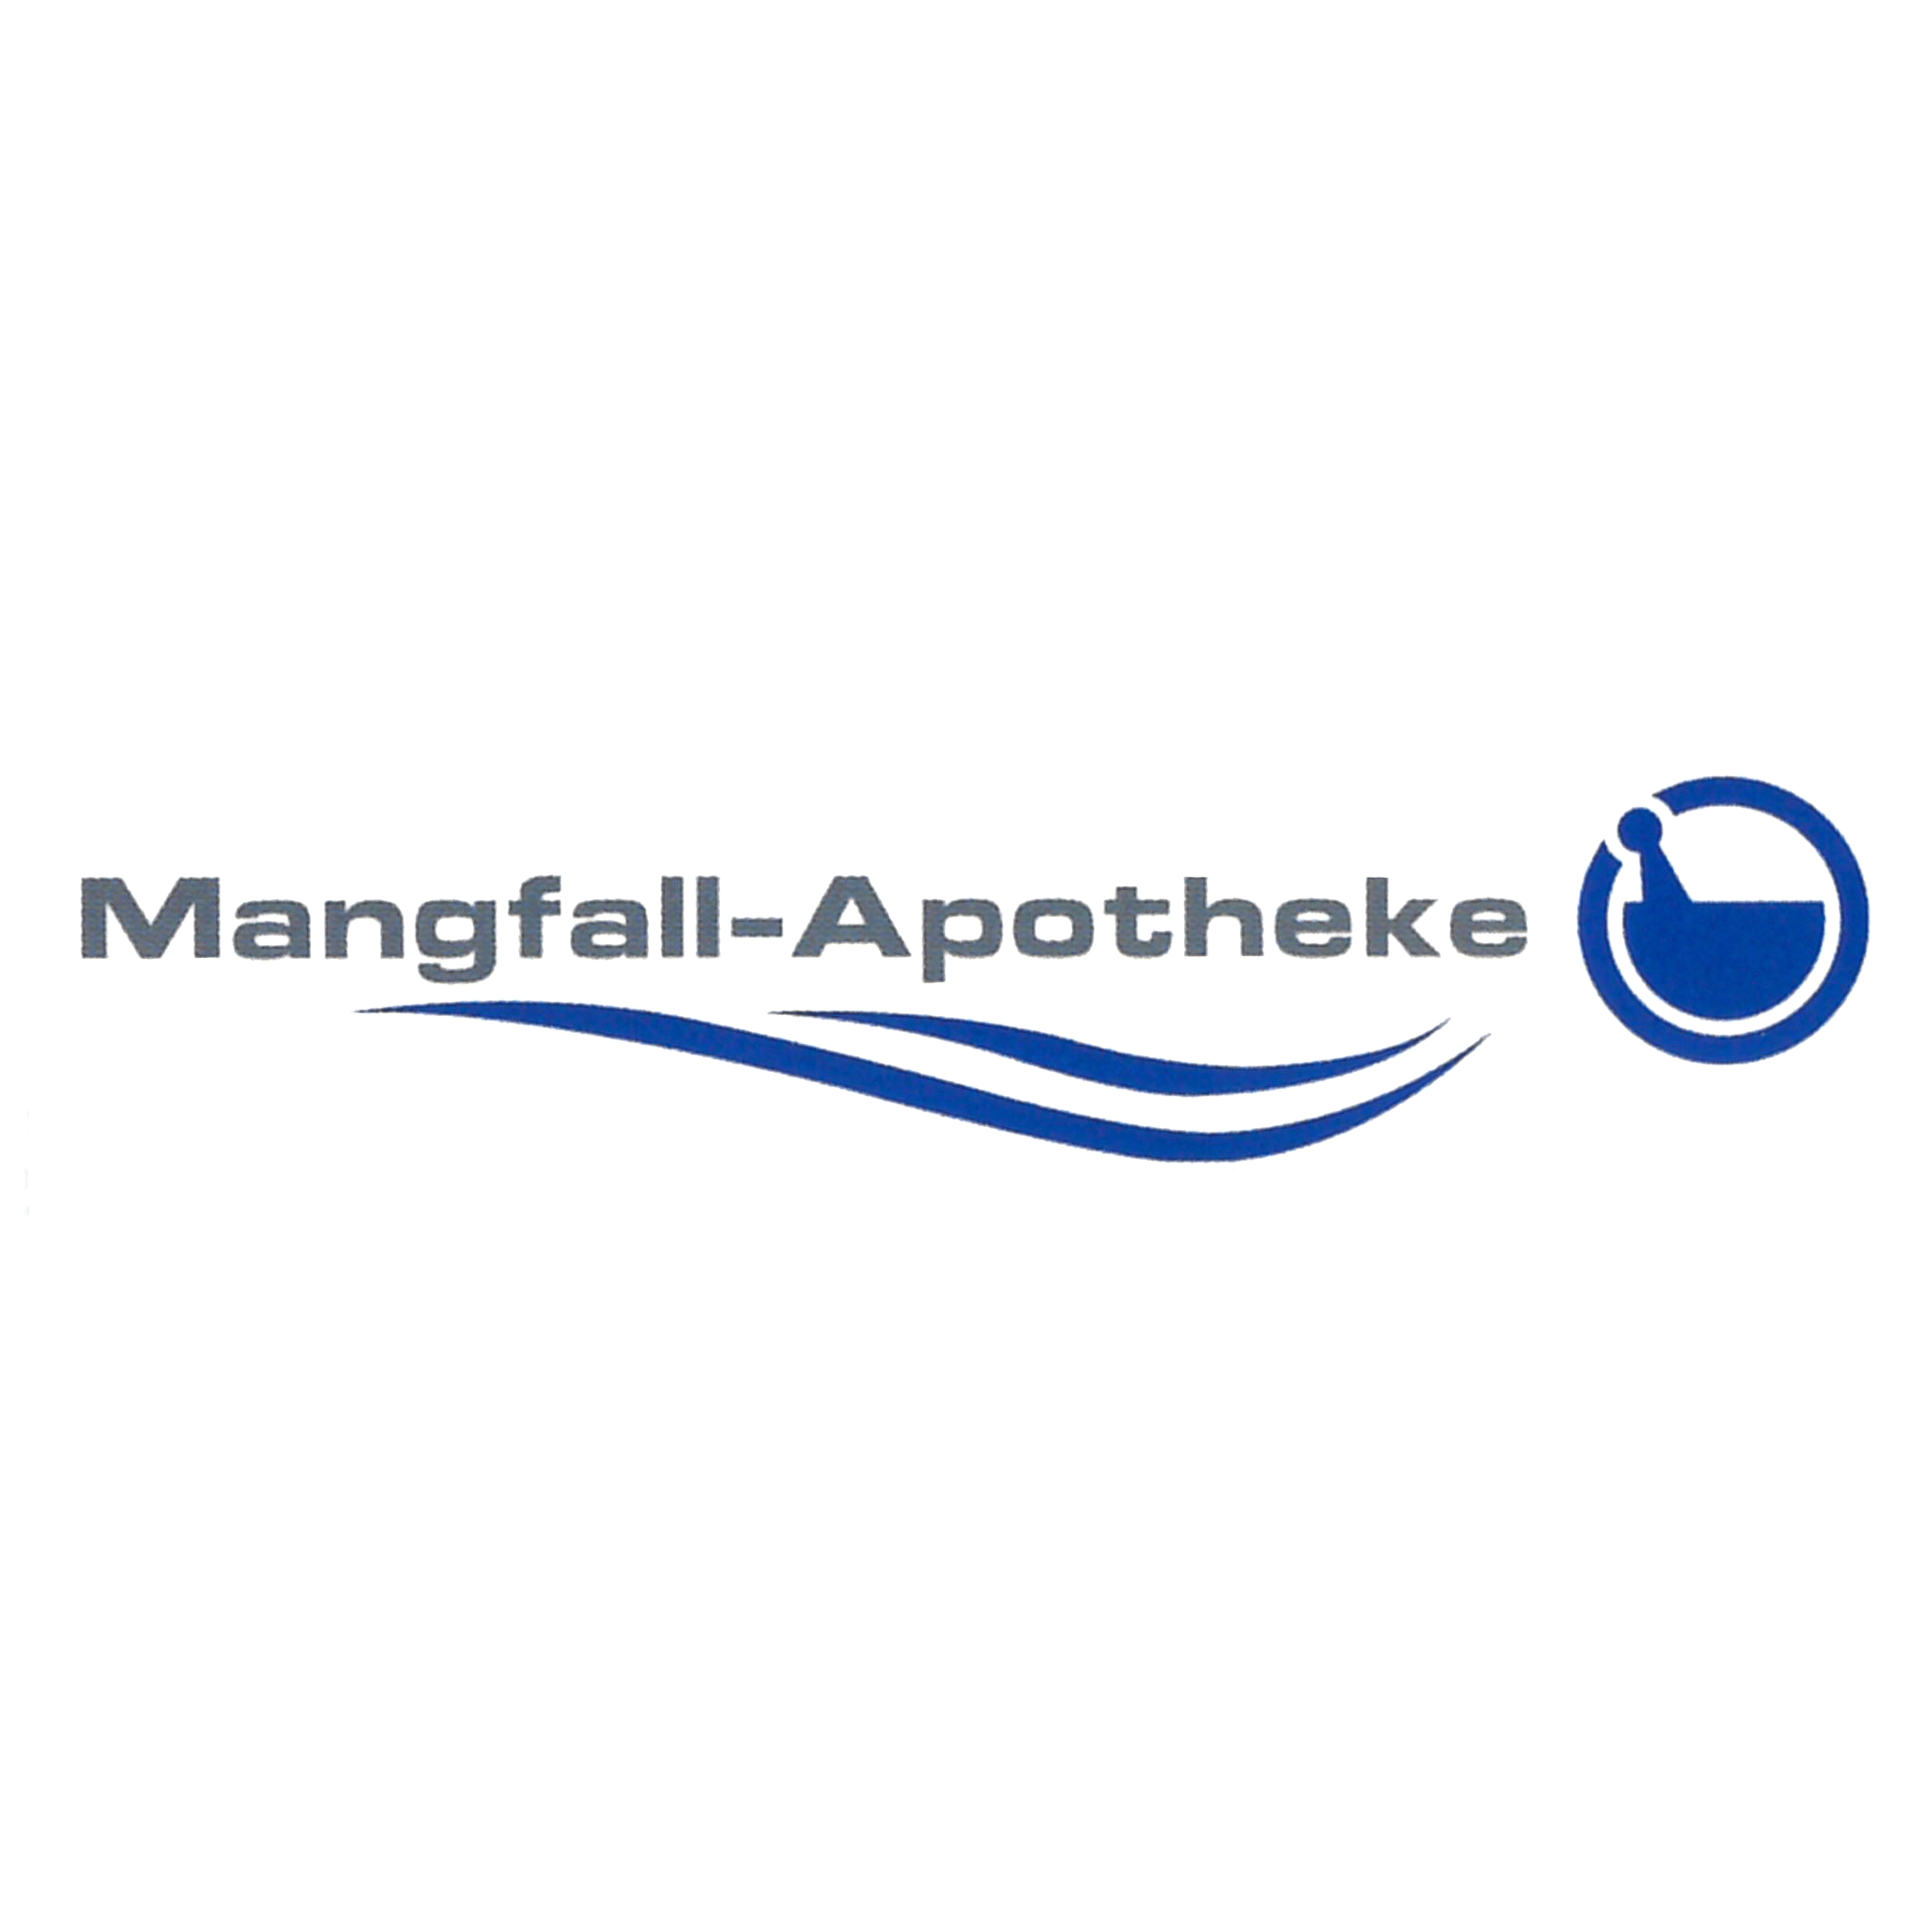 Logo der Mangfall-Apotheke